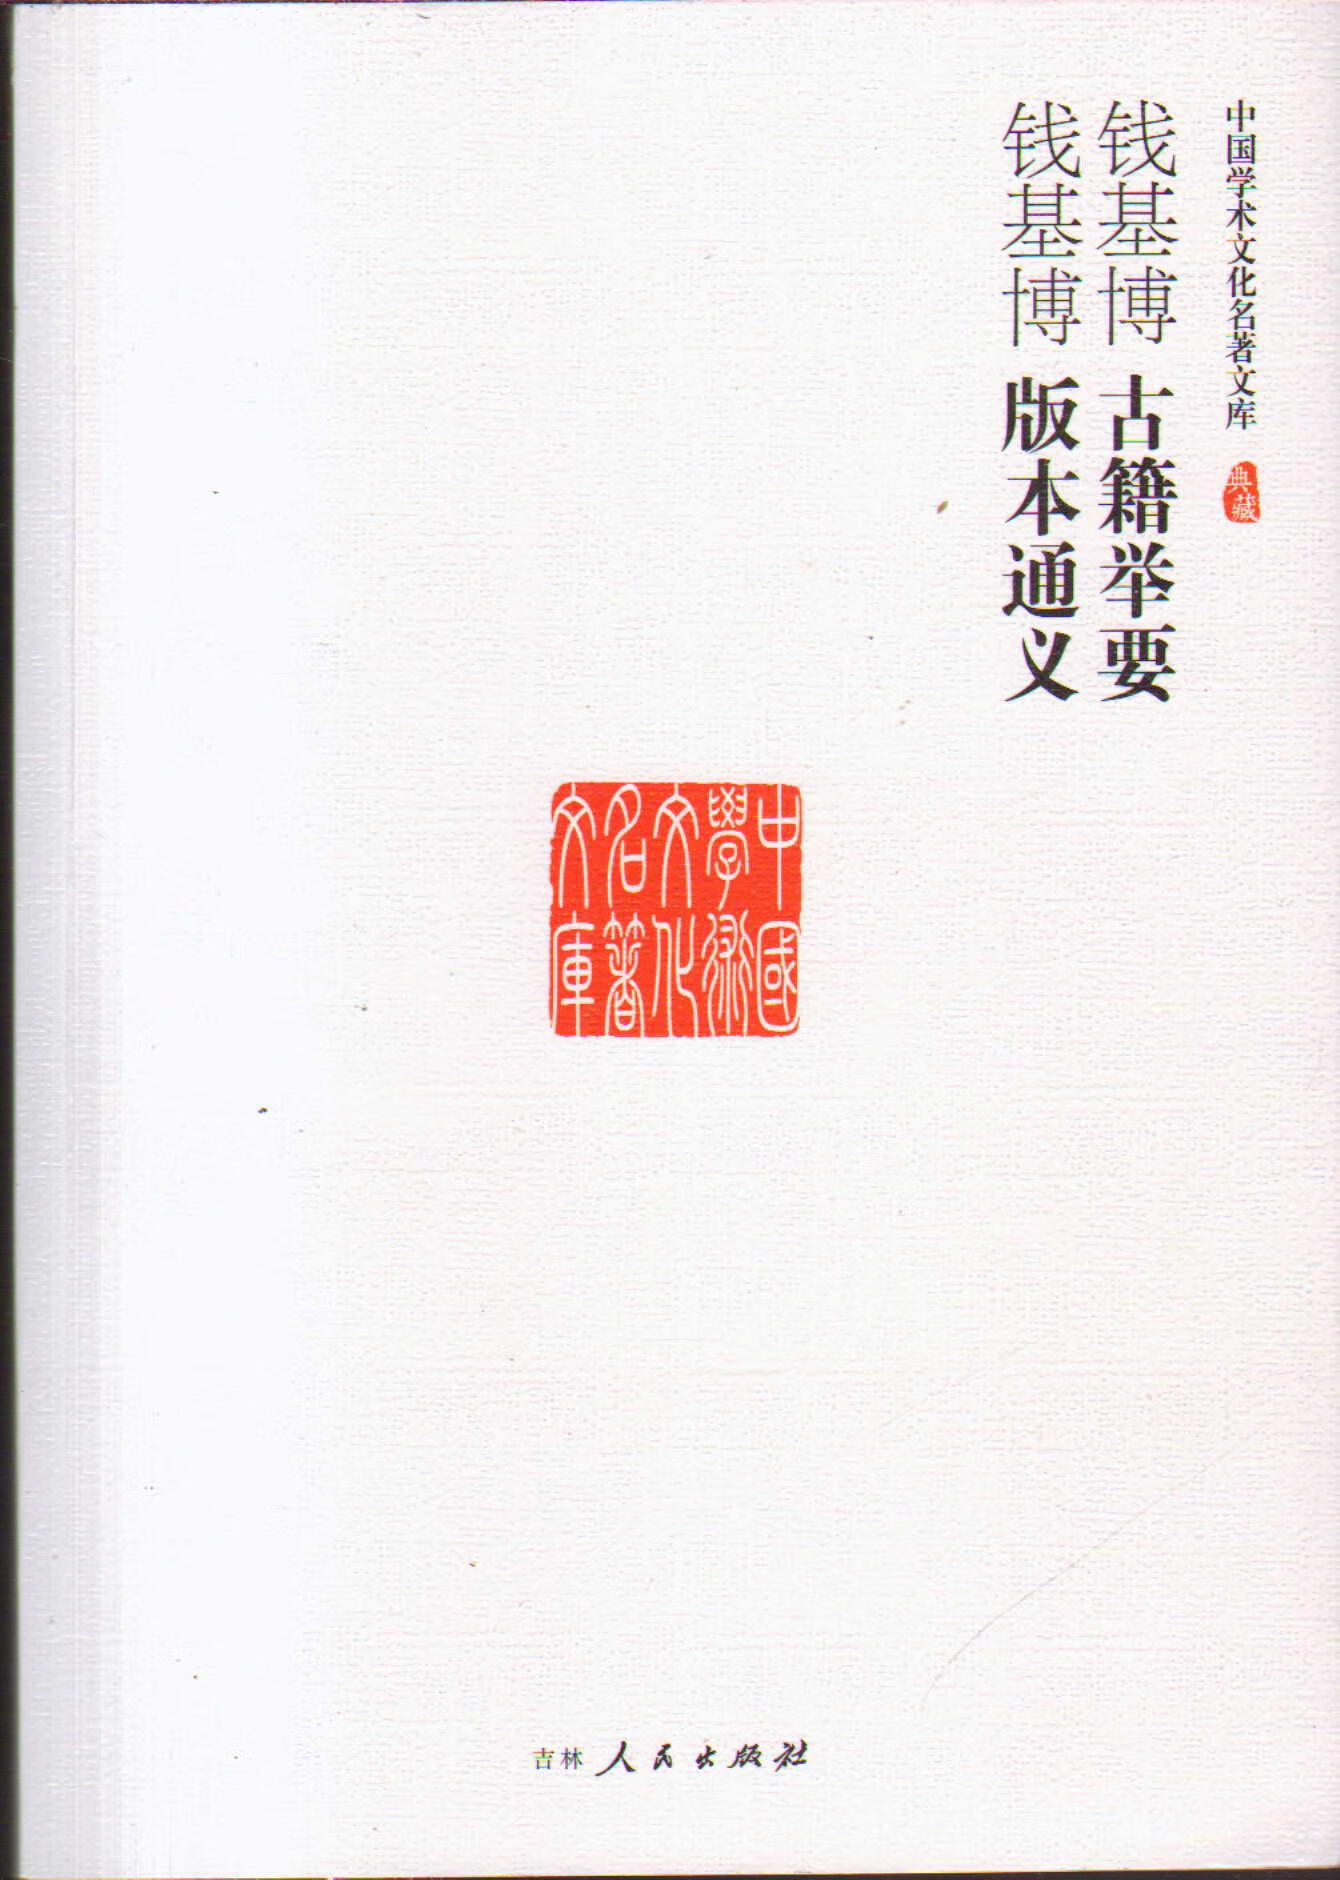 【书】中国学术文化名著文库古籍举要 版本通义